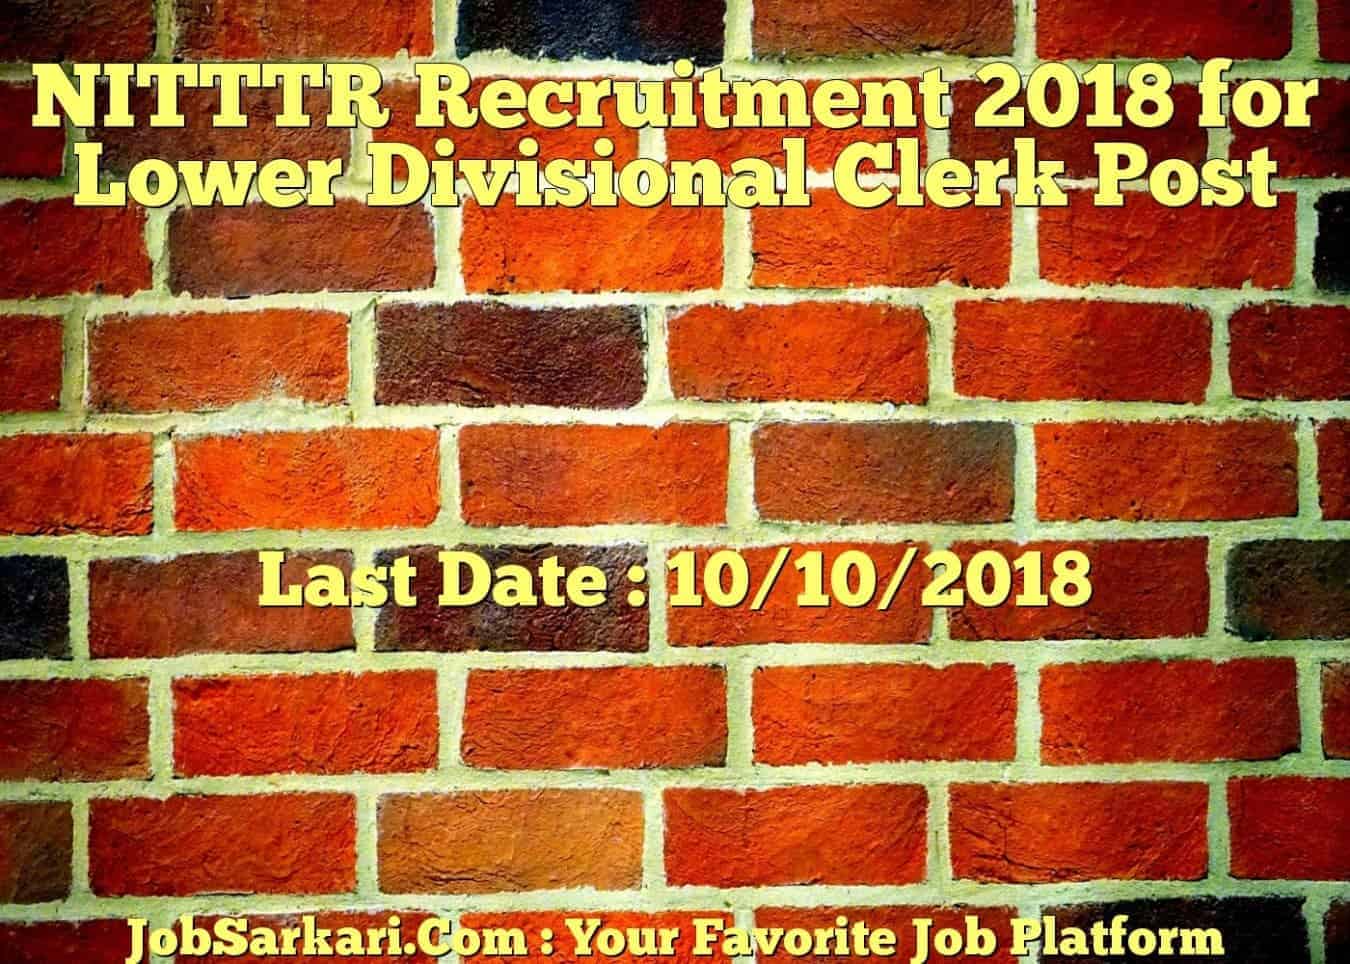 NITTTR Recruitment 2018 for Lower Divisional Clerk Post